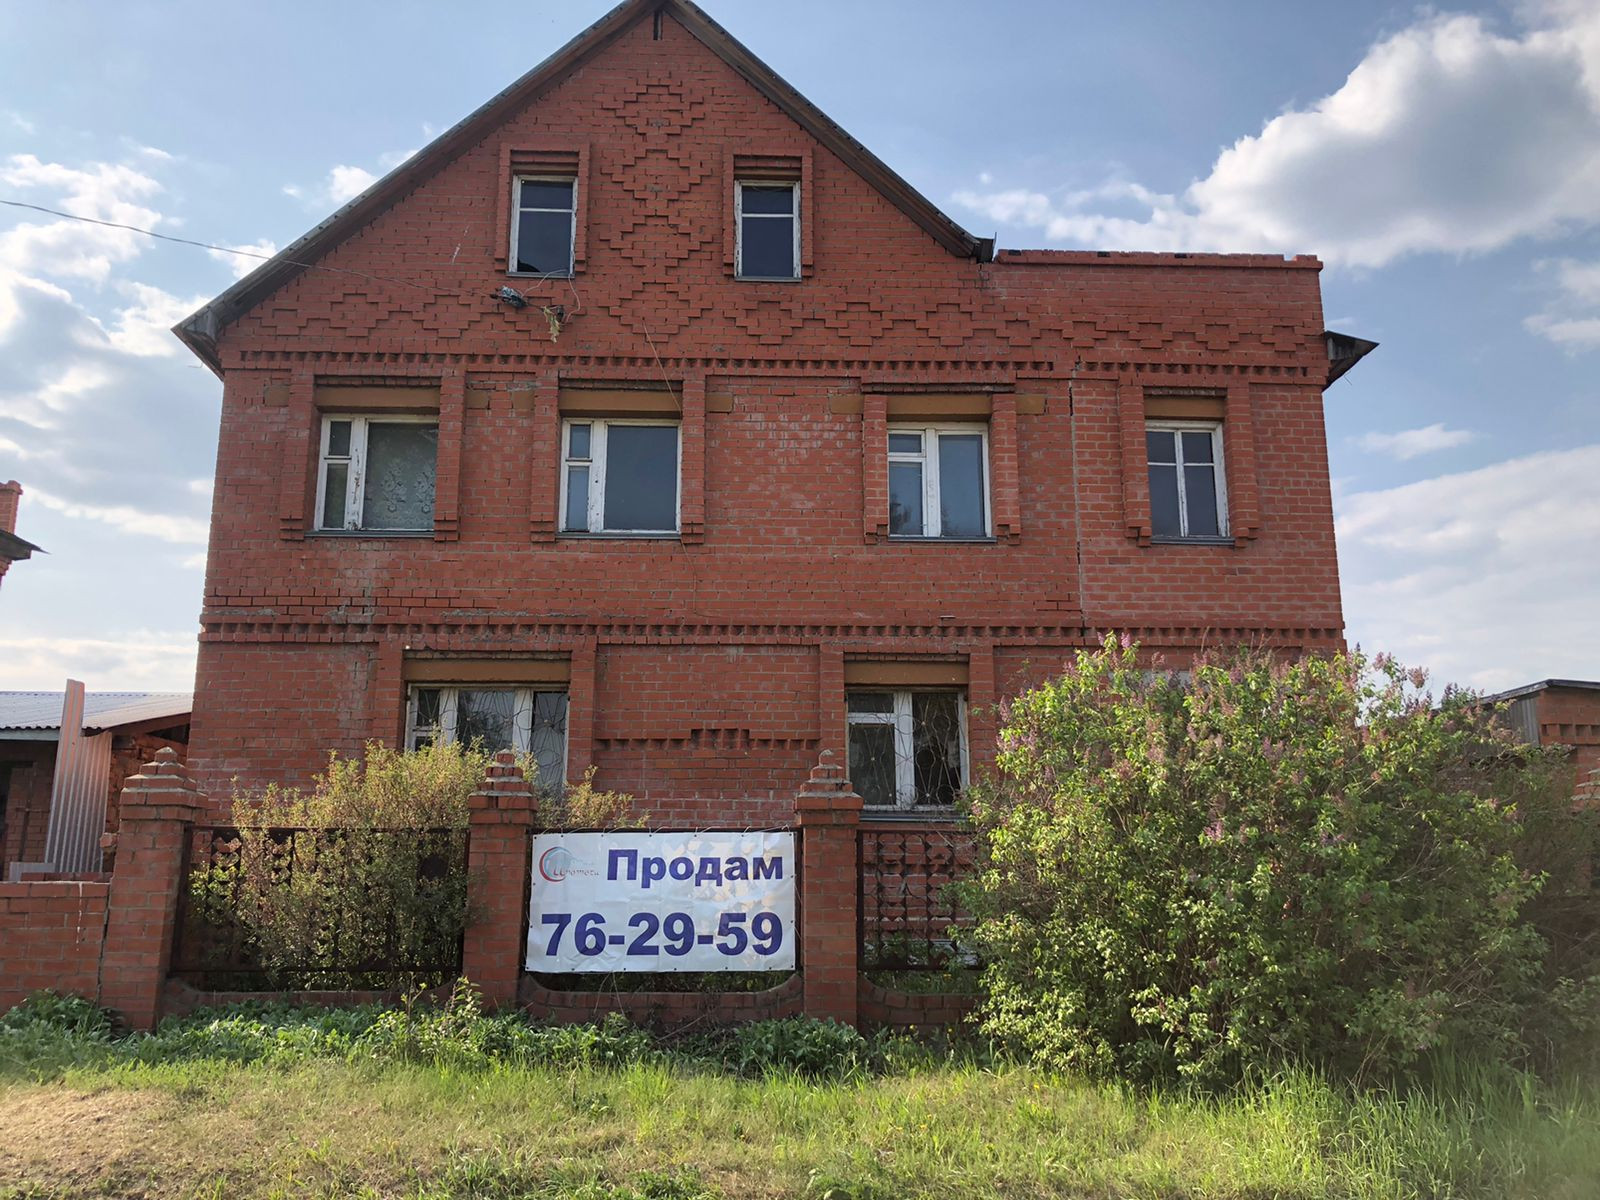 Купить дом в село Березово Кемеровский район свежие объявления.